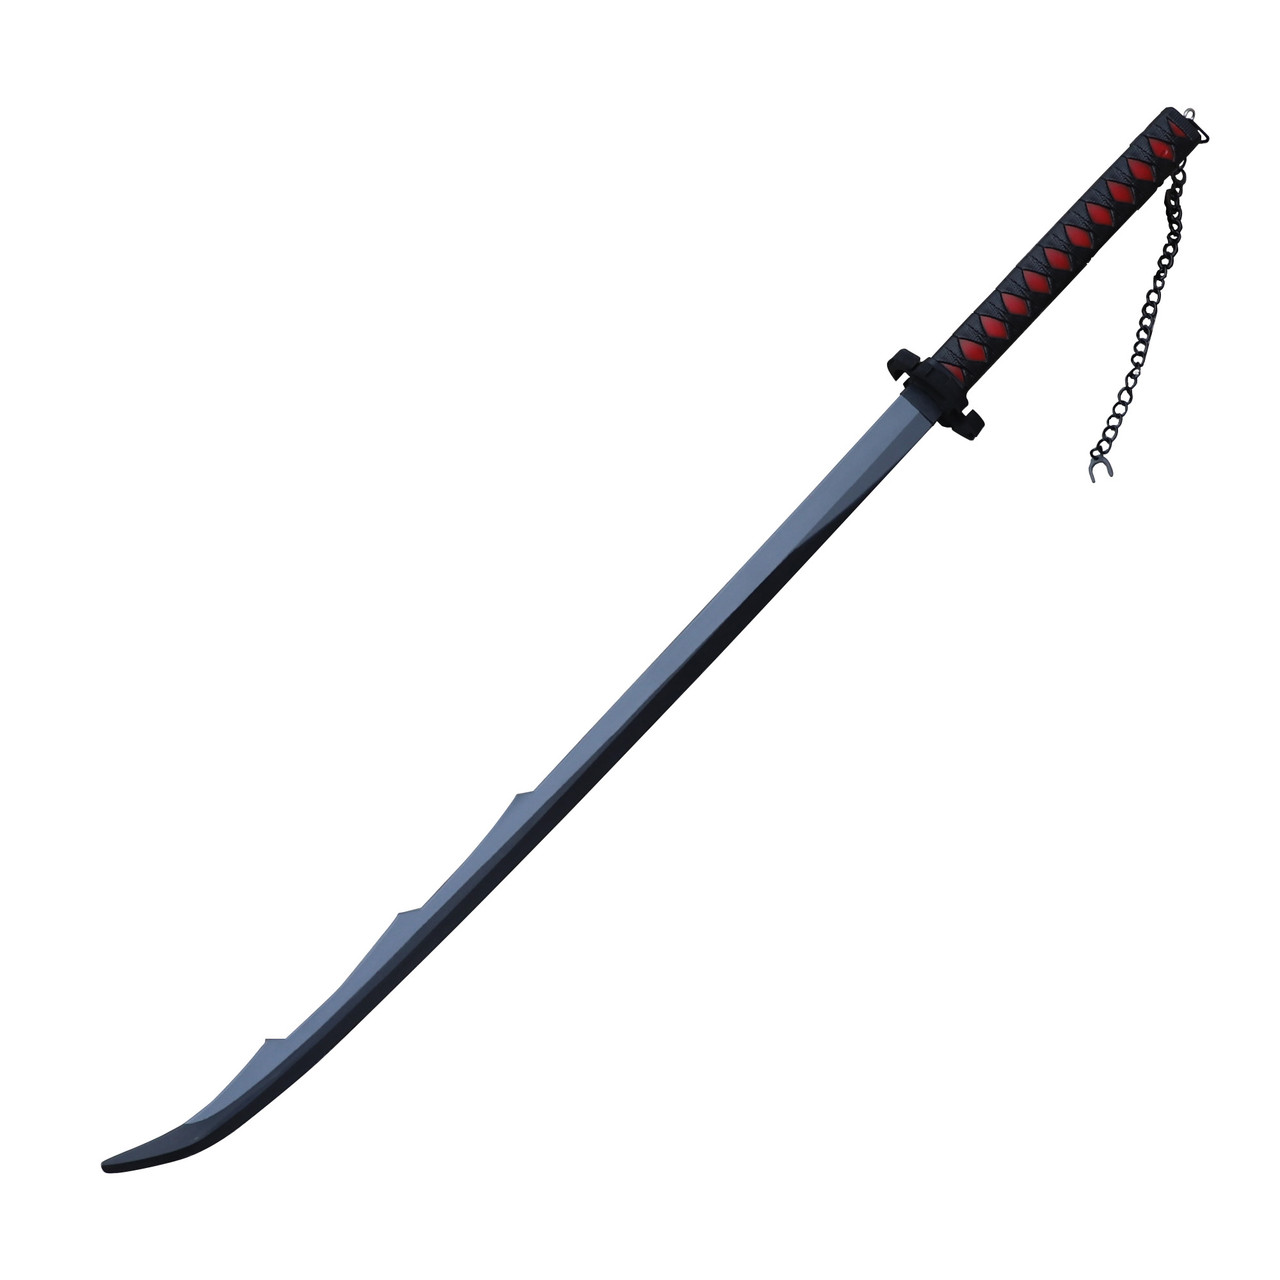 Anime Swords | Anime Katana Sword Replicas